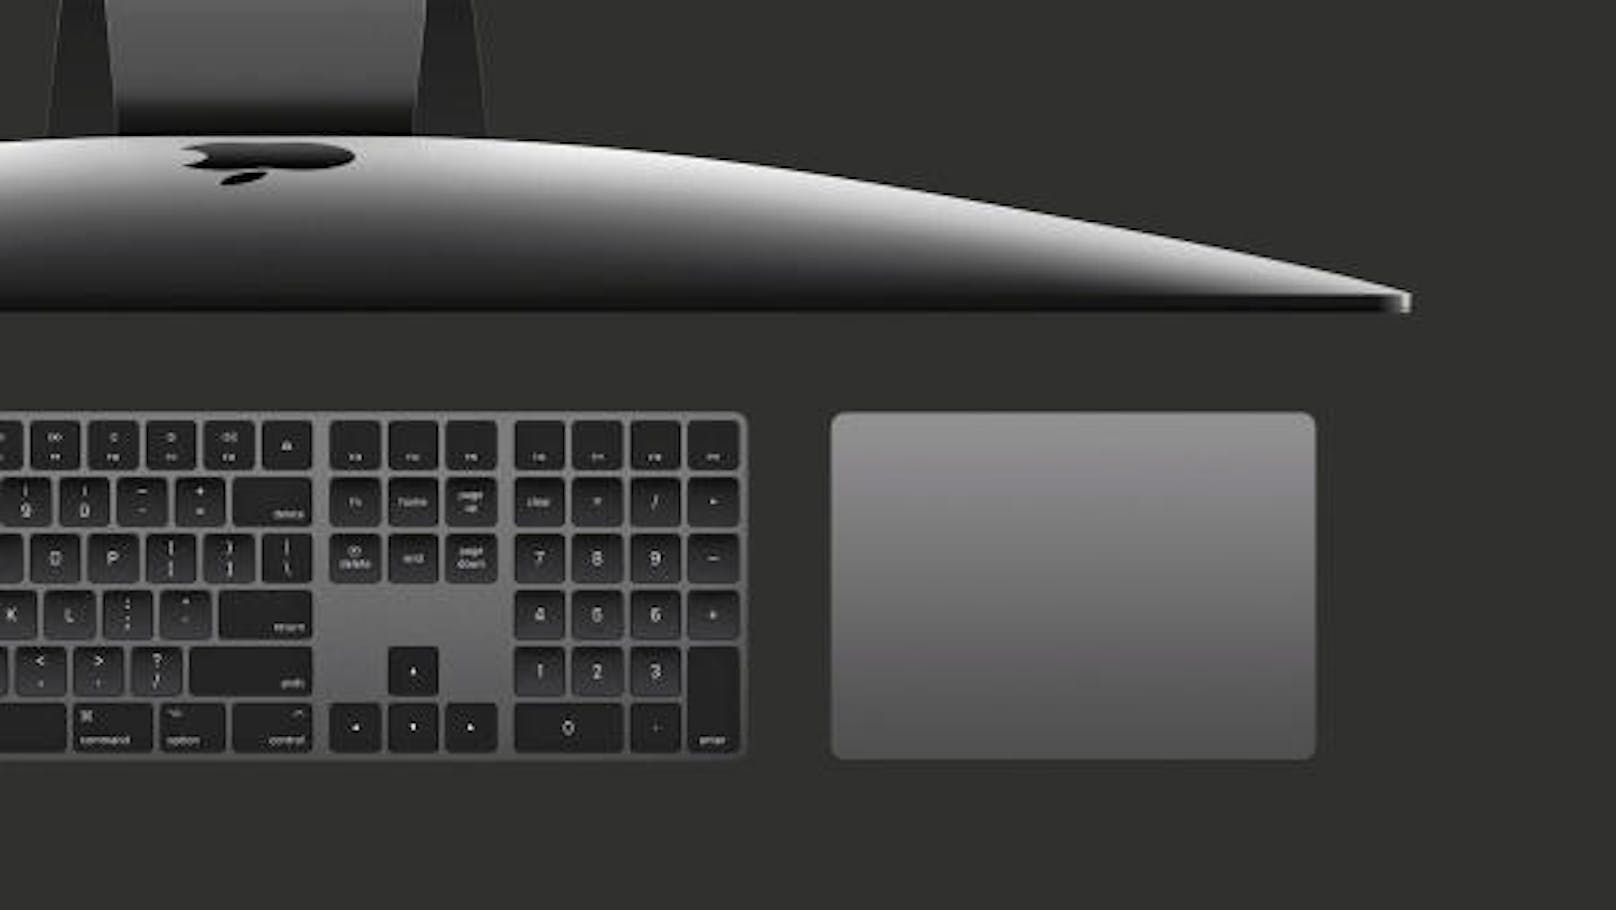 <b>06. Jänner 2017:</b> Wie viel würden Sie für eine Tastatur bezahlen? Apple-Fans haben eine Antwort auf diese Frage. So wird derzeit die Mac-Tastatur in Spacegrau, die es nur mit dem neuen iMac Pro zu kaufen gibt, zu "obszönen Summen" gehandelt, wie Gizmodo.com berichtet. Auf der Plattform Ebay wechselt das Accessoire (inklusive Maus und Trackpad) für teilweise bis zu 1.500 US-Dollar den Besitzer.